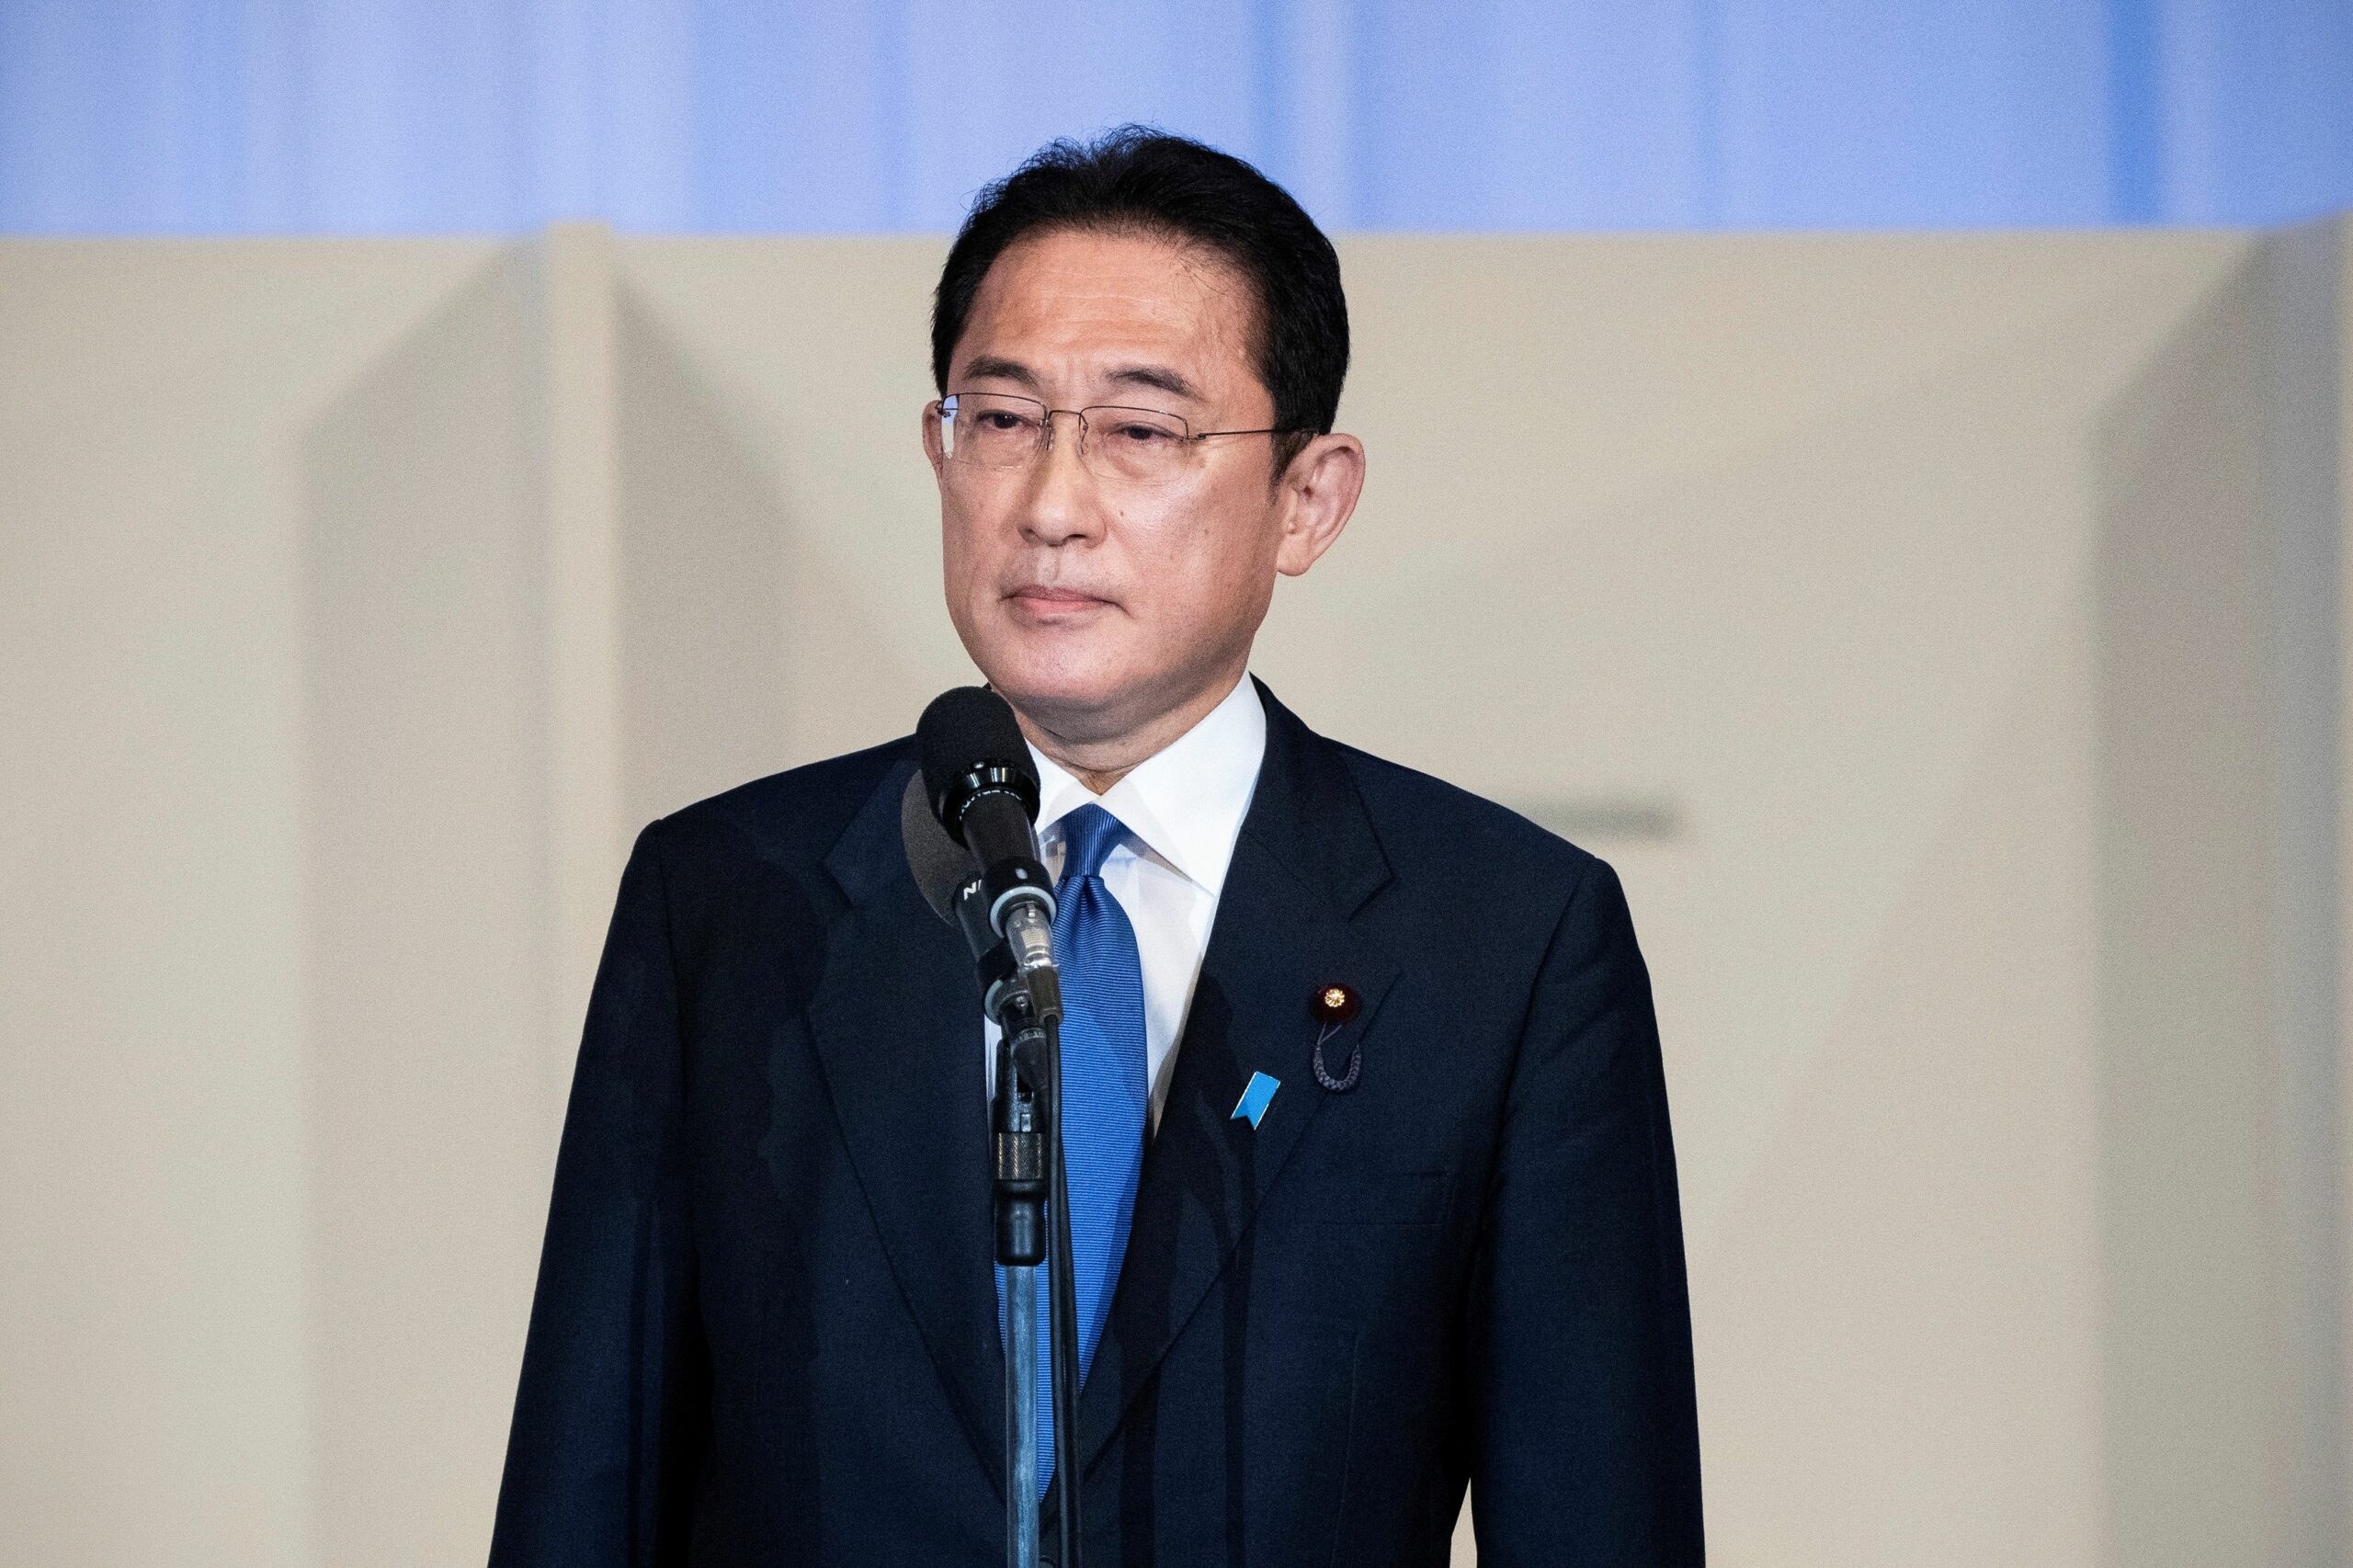 “ฟูมิโอะ คิชิดะ” นายกรัฐมนตรีญี่ปุ่นคนใหม่ หลังได้รับเลือกเป็นผู้นำพรรค – ต่างประเทศ